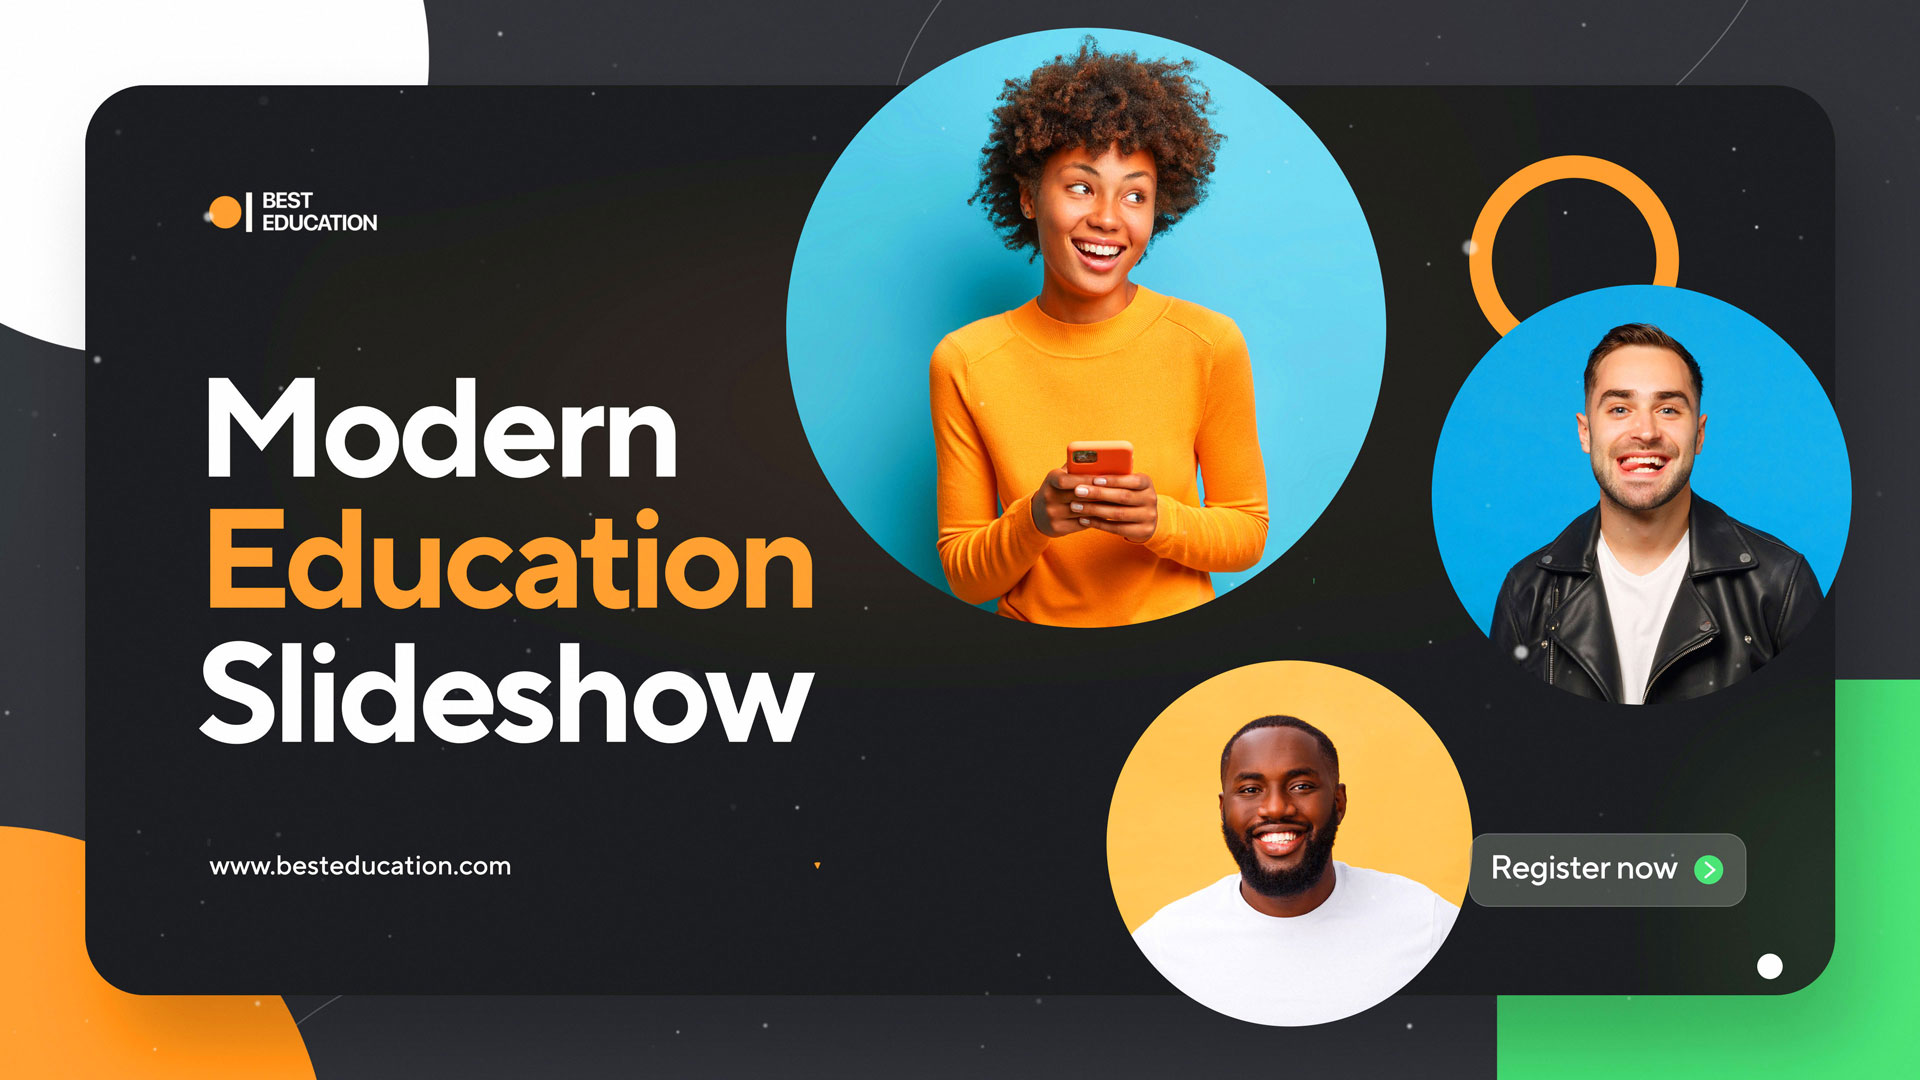 Education Slideshow